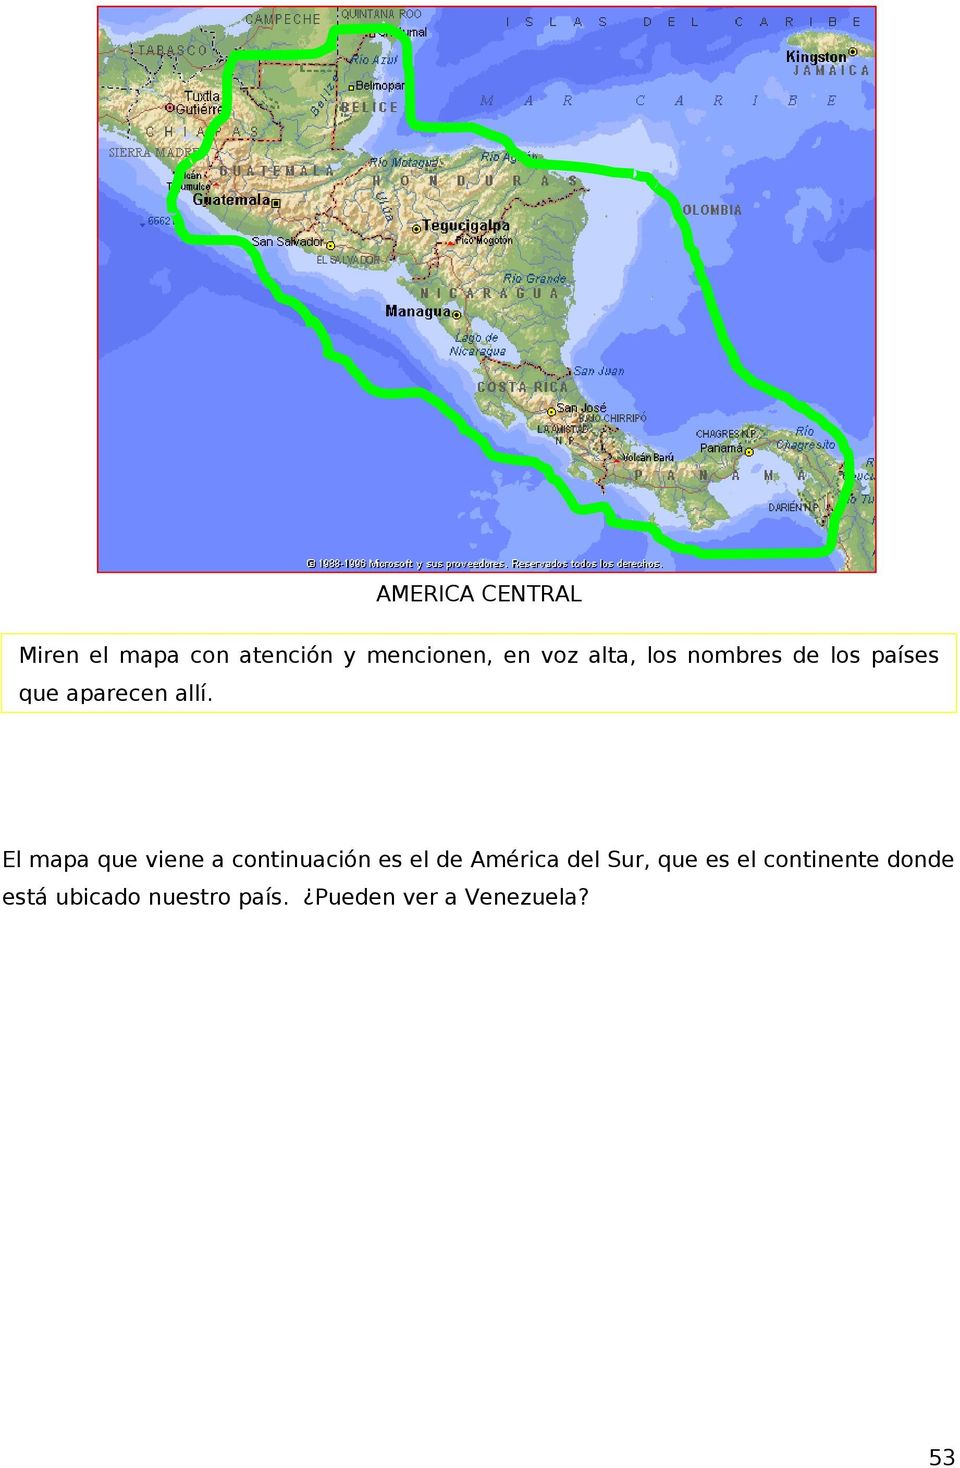 El mapa que viene a continuación es el de América del Sur, que